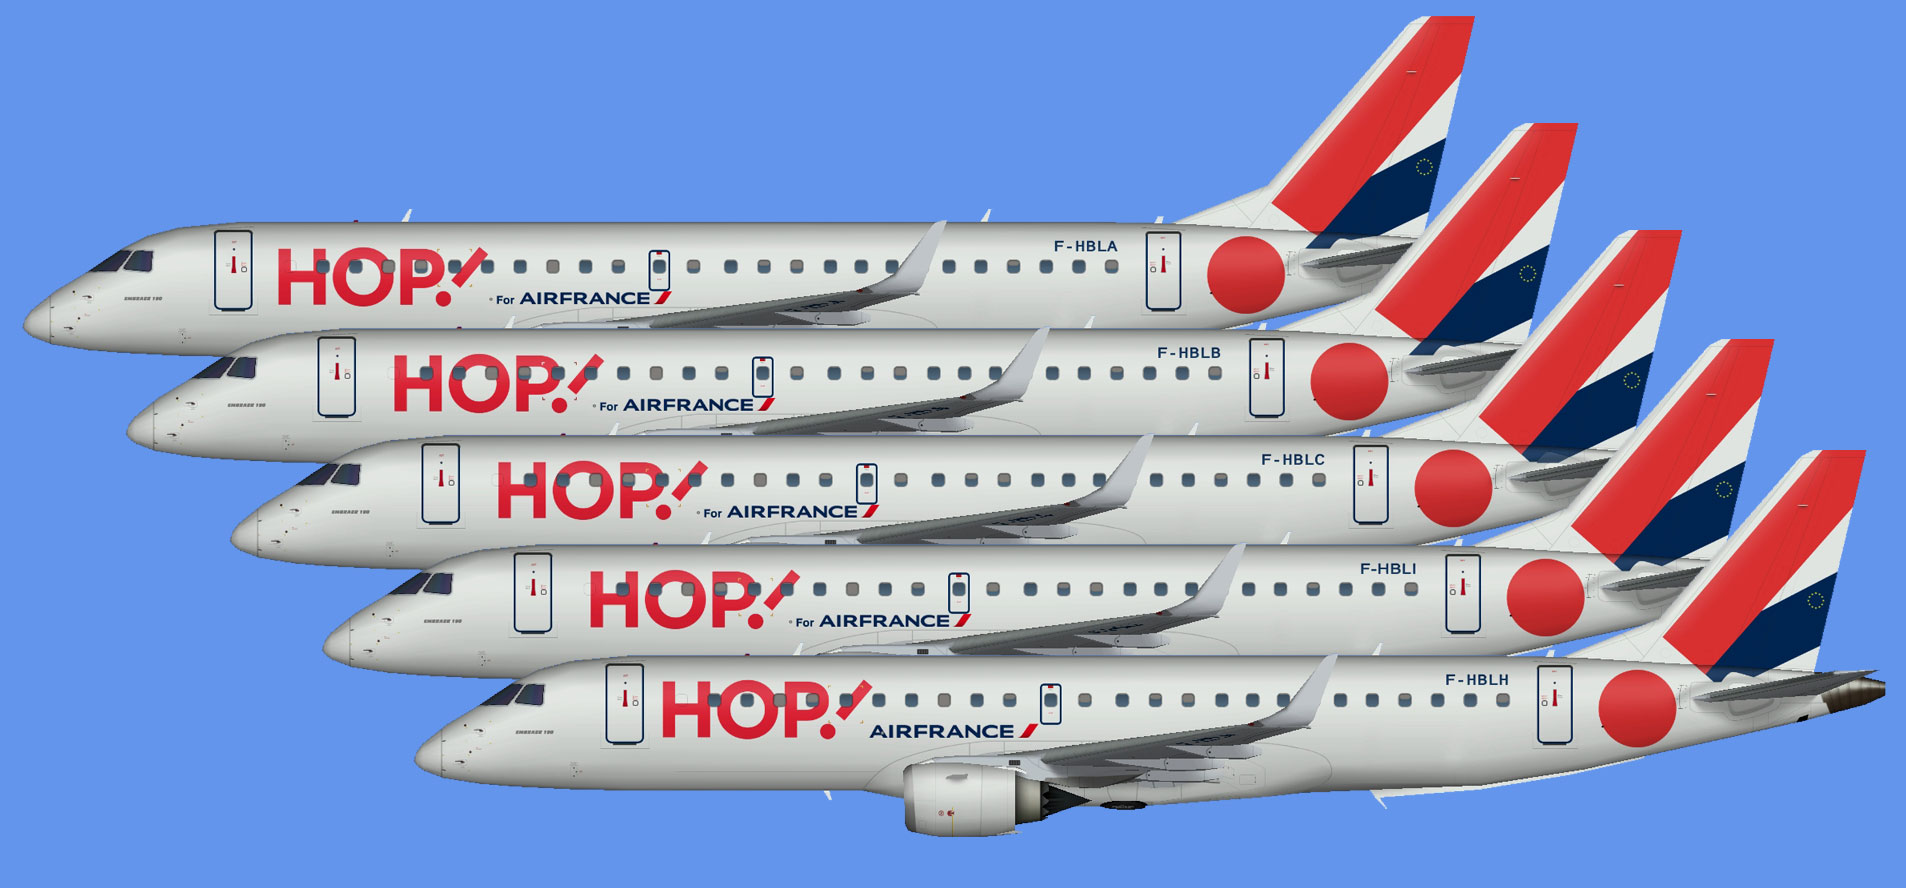 Hop! Embraer E-190 fleet